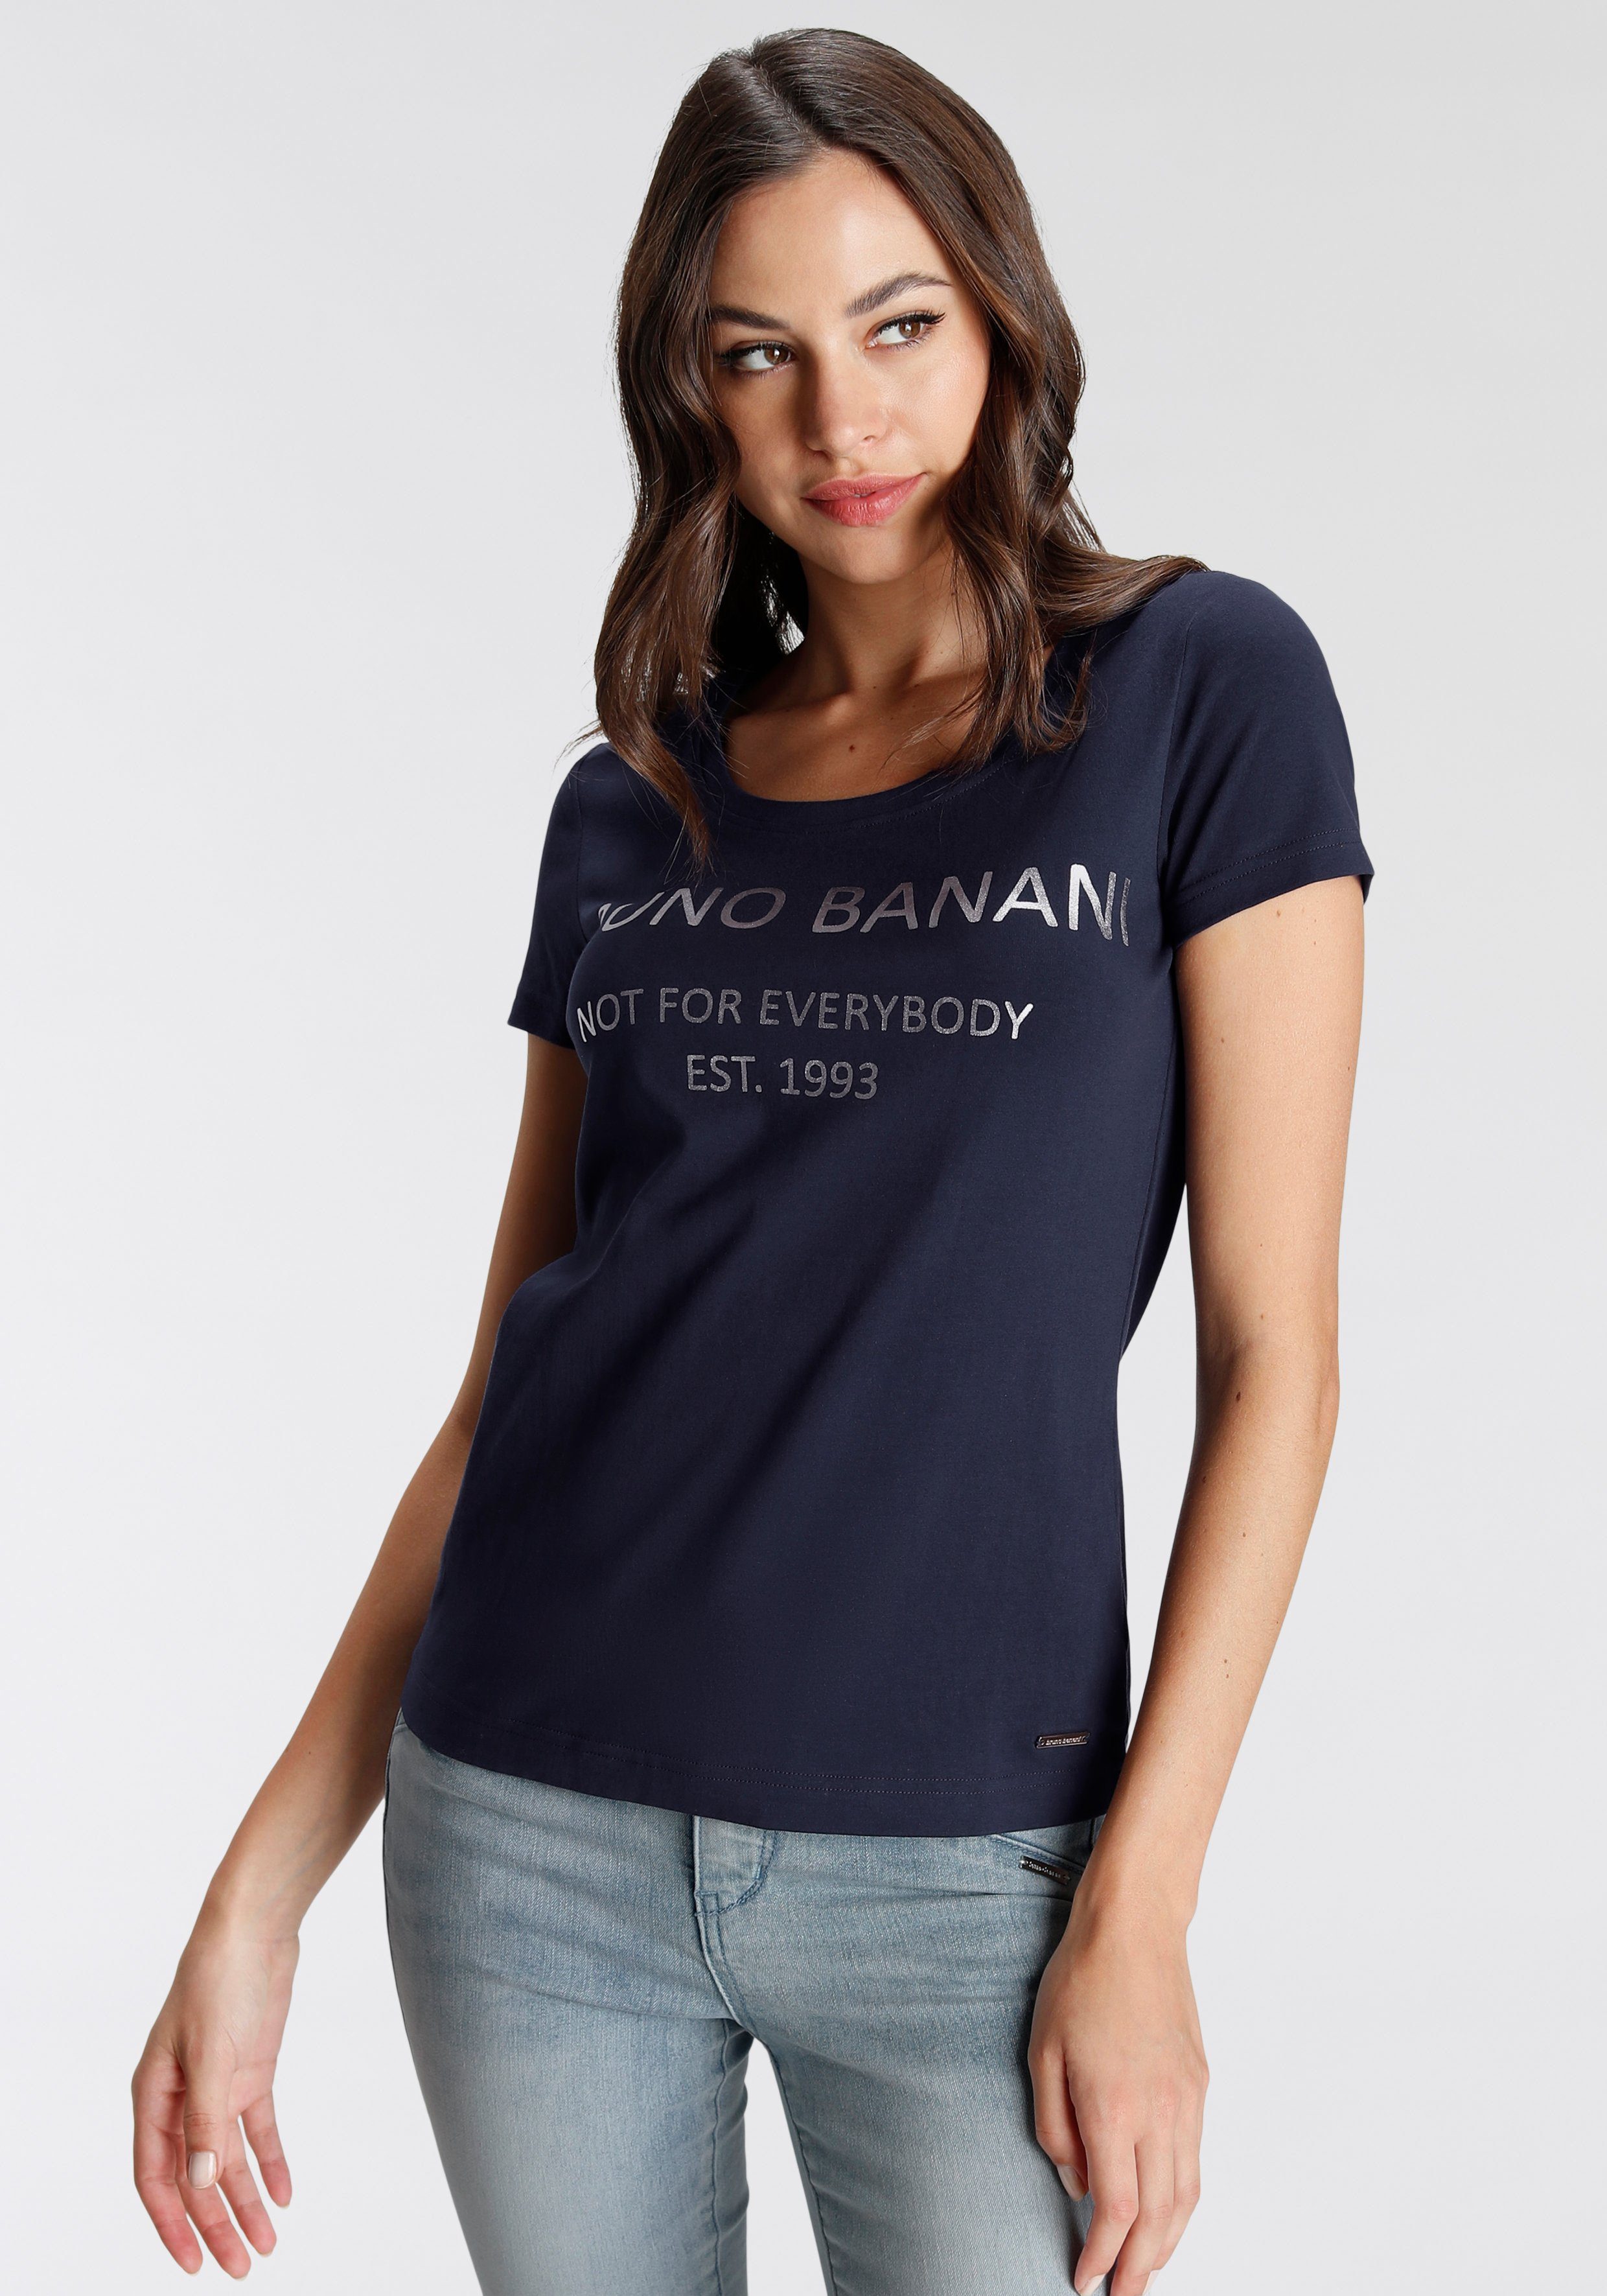 KOLLEKTION Bruno T-Shirt Logodruck mit Banani goldfarbenem NEUE marine